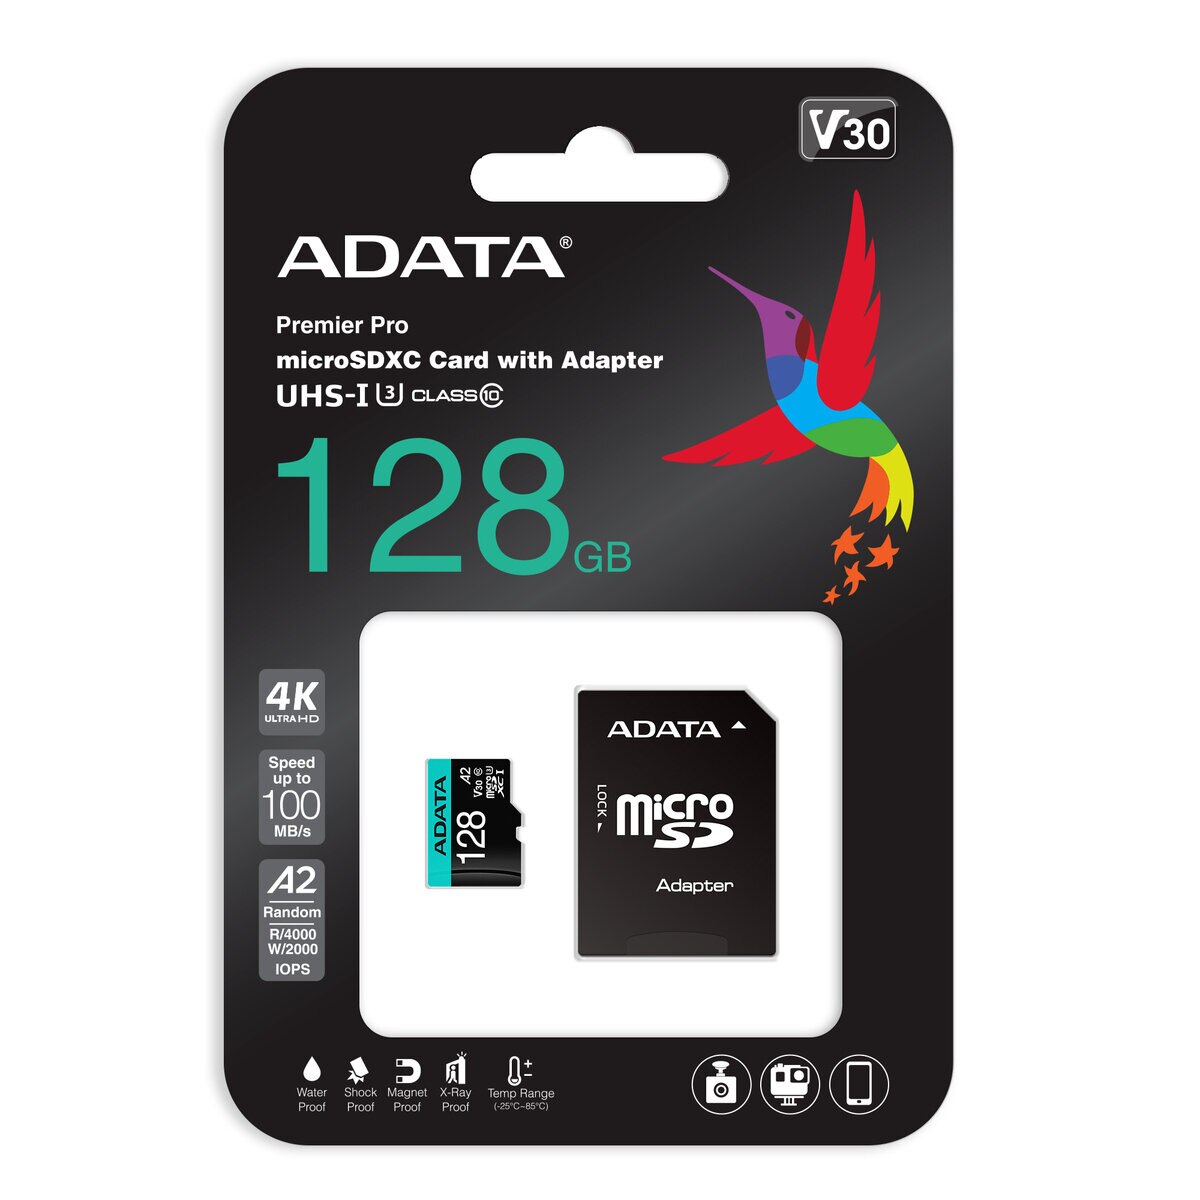 ADATA microSD 128GB UHS-I U3 V30S A2 AUSDX128GUI3V30SA2-RA1